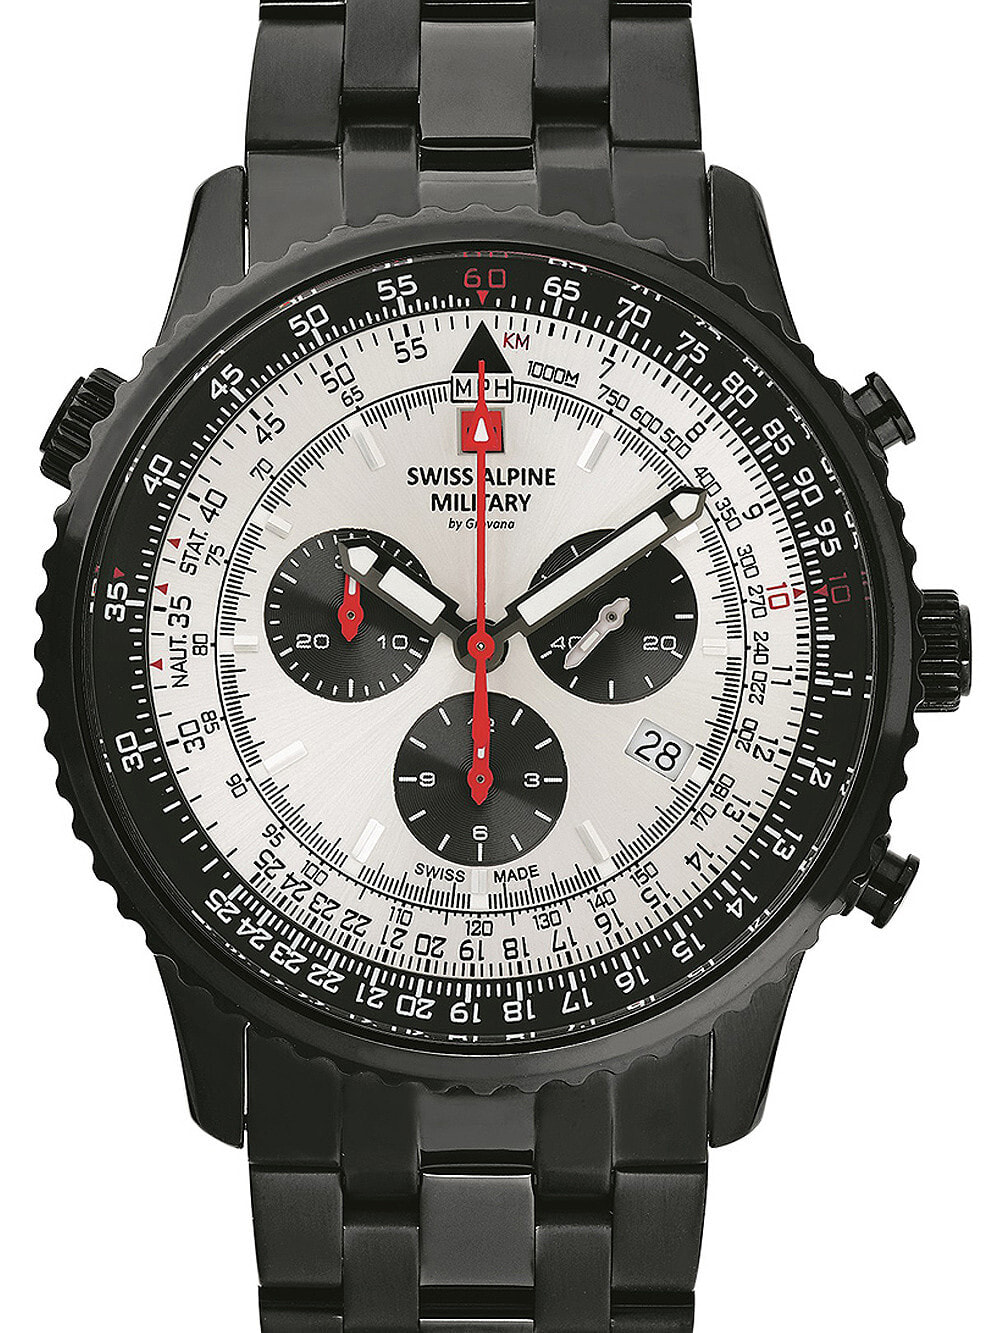 Мужские наручные часы с черным браслетом Swiss Alpine Military 7078.9172 chrono mens 45mm 10ATM